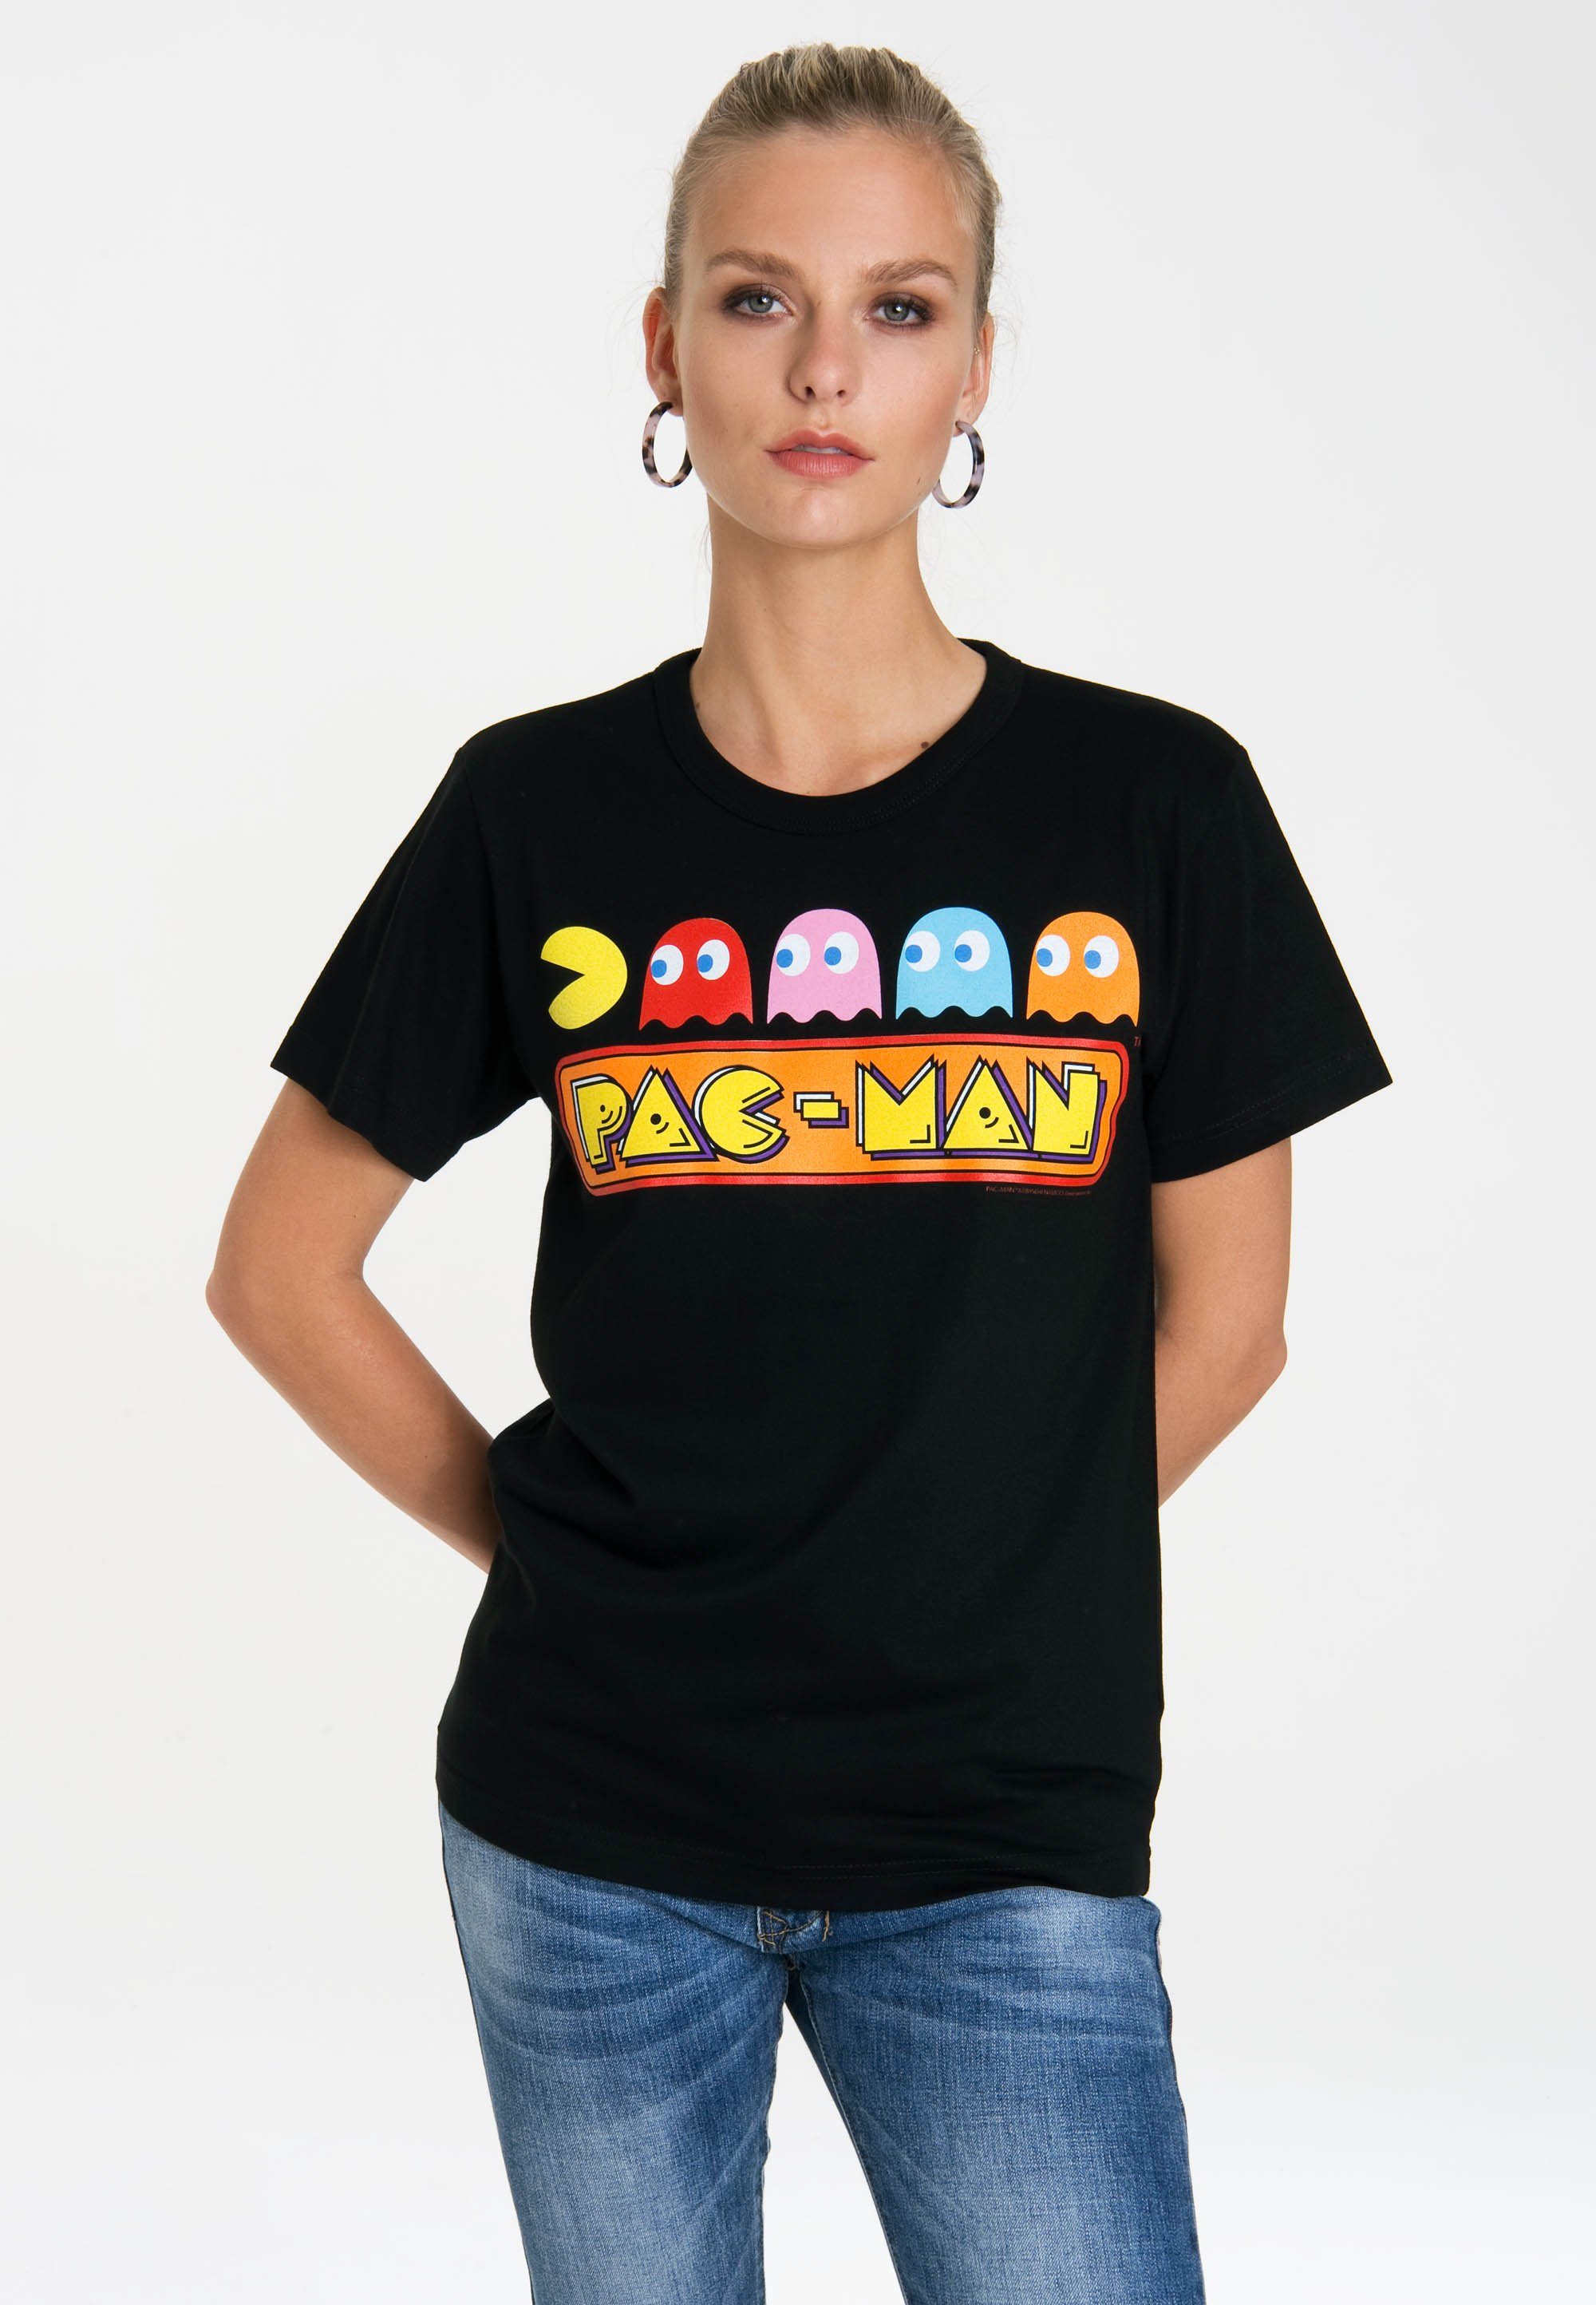 LOGOSHIRT T-Shirt Pac-Man mit lizenziertem Originaldesign